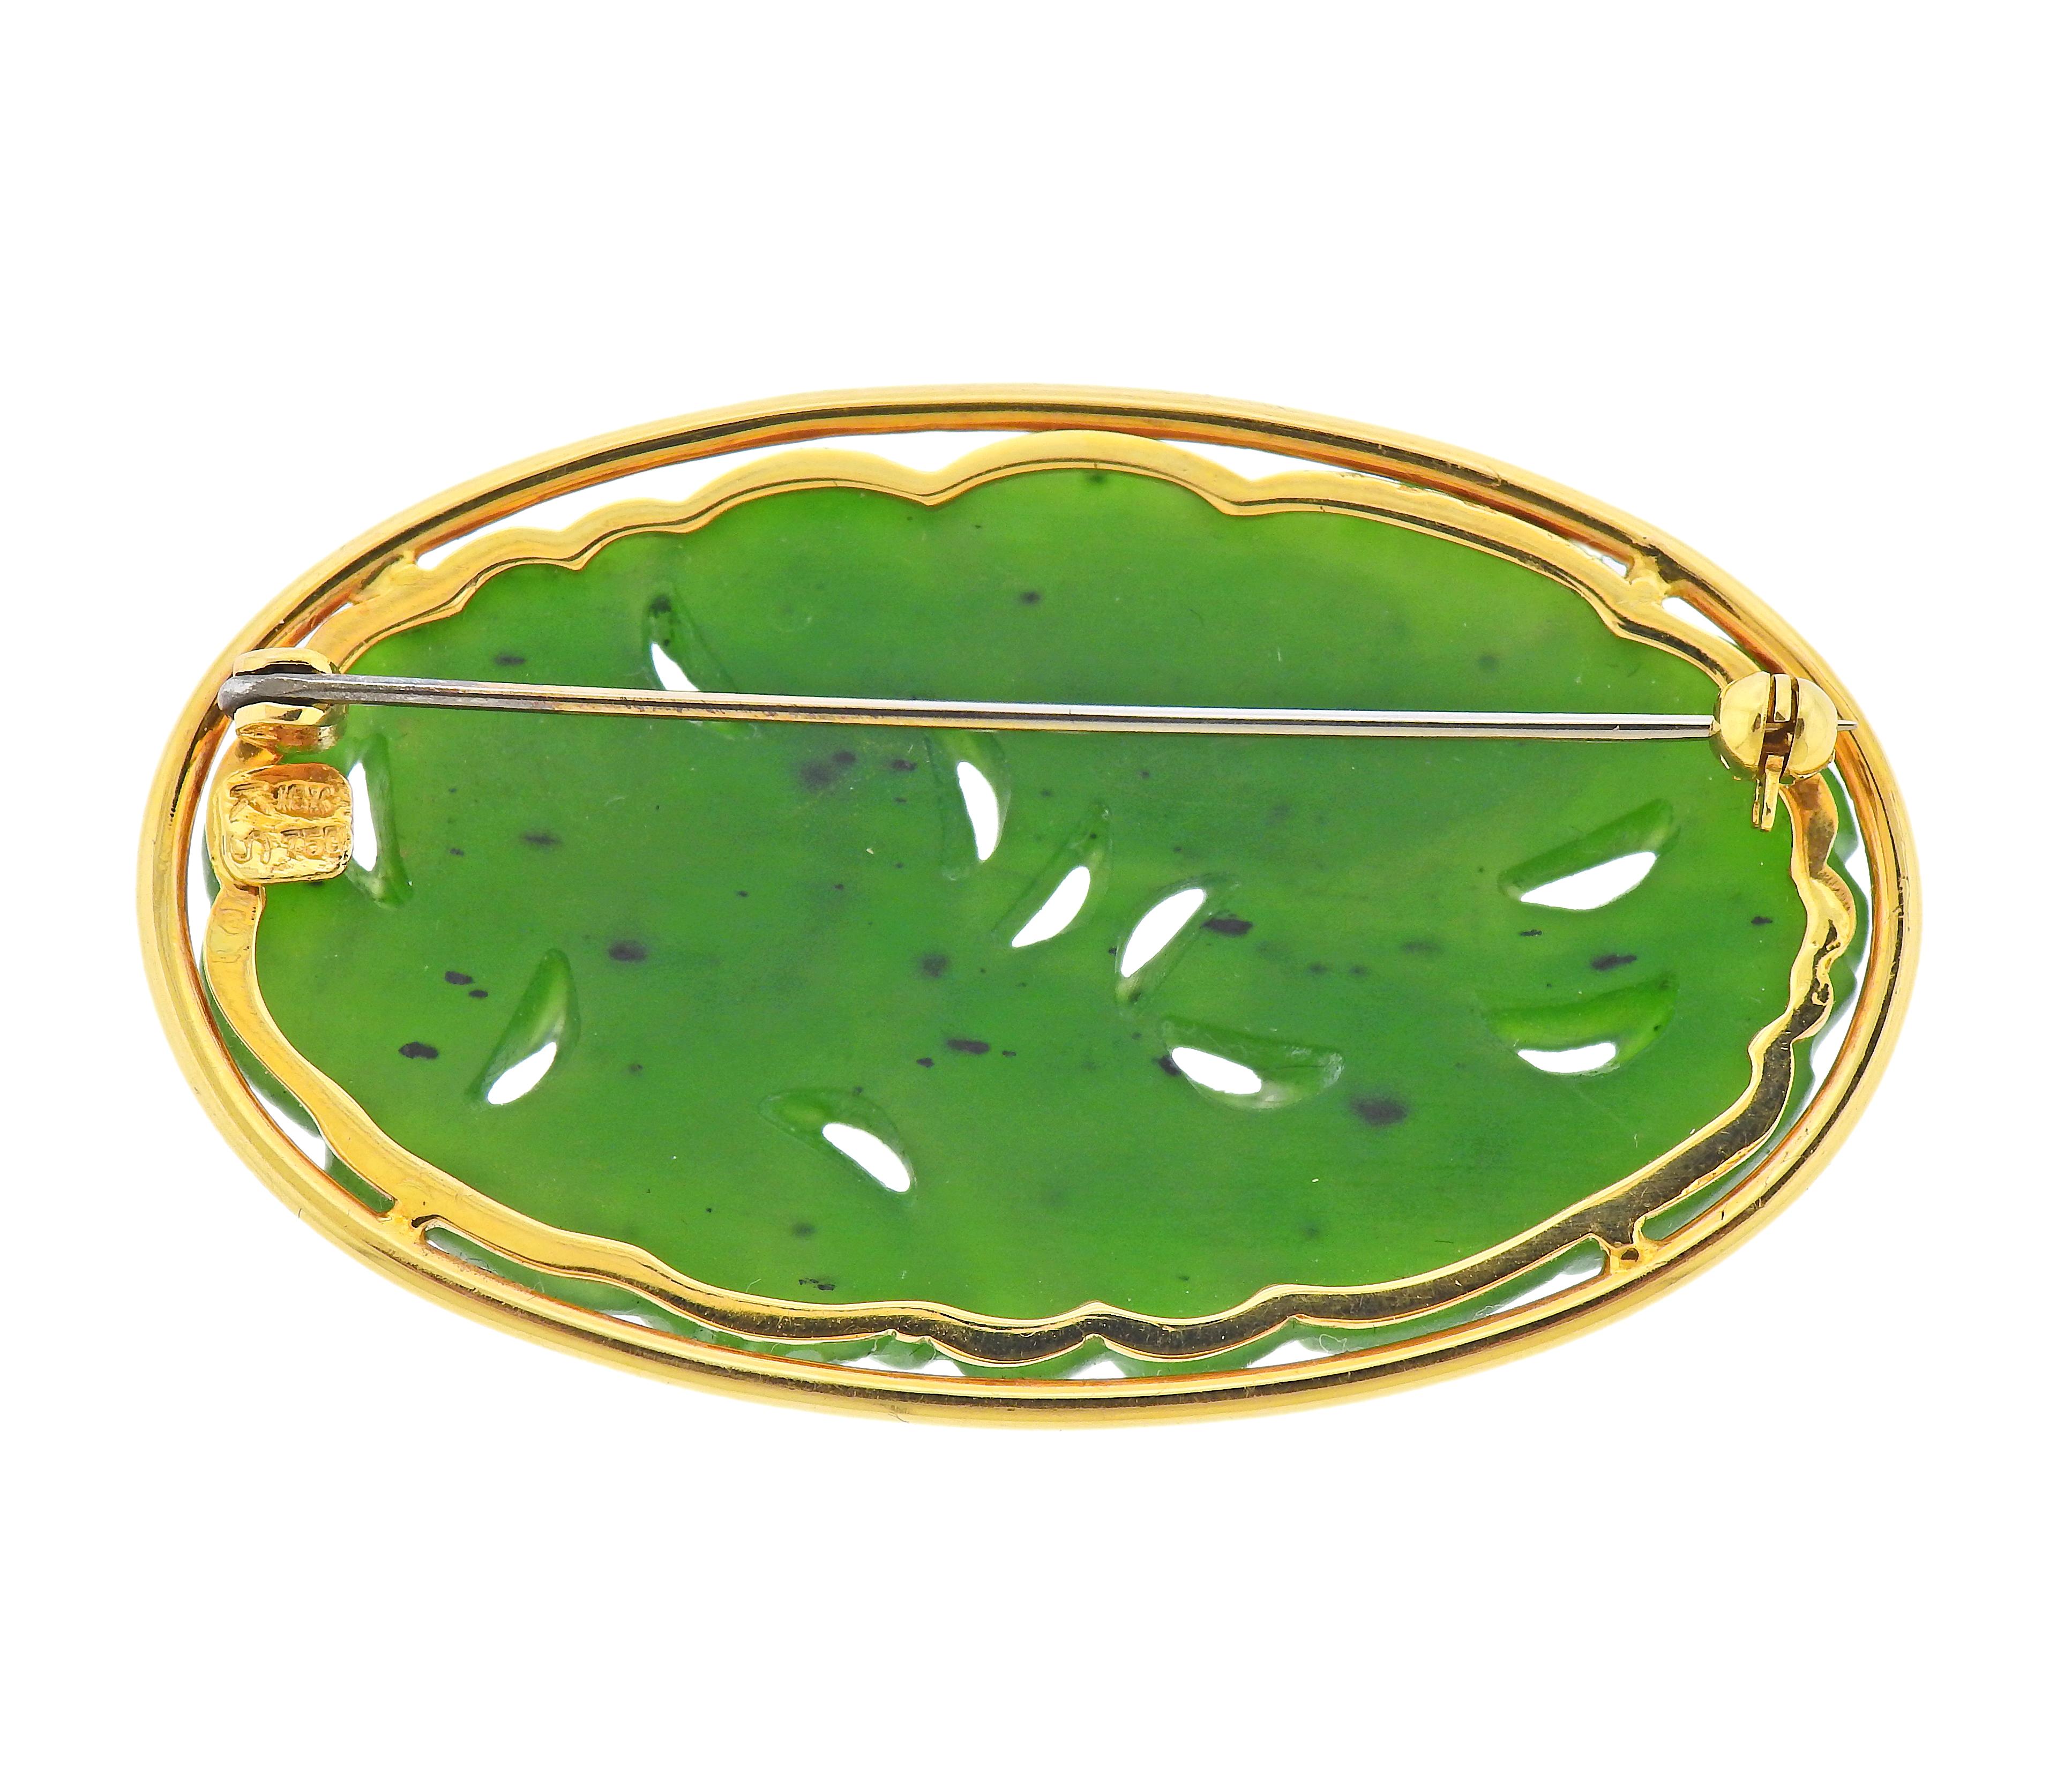 Ovale Brosche aus 18 Karat Gold mit geschnitzter Nephrit-Jade. Die Brosche ist 53 mm x 31 mm groß. Gezeichnet 18k. Gewicht - 16,7 Gramm.